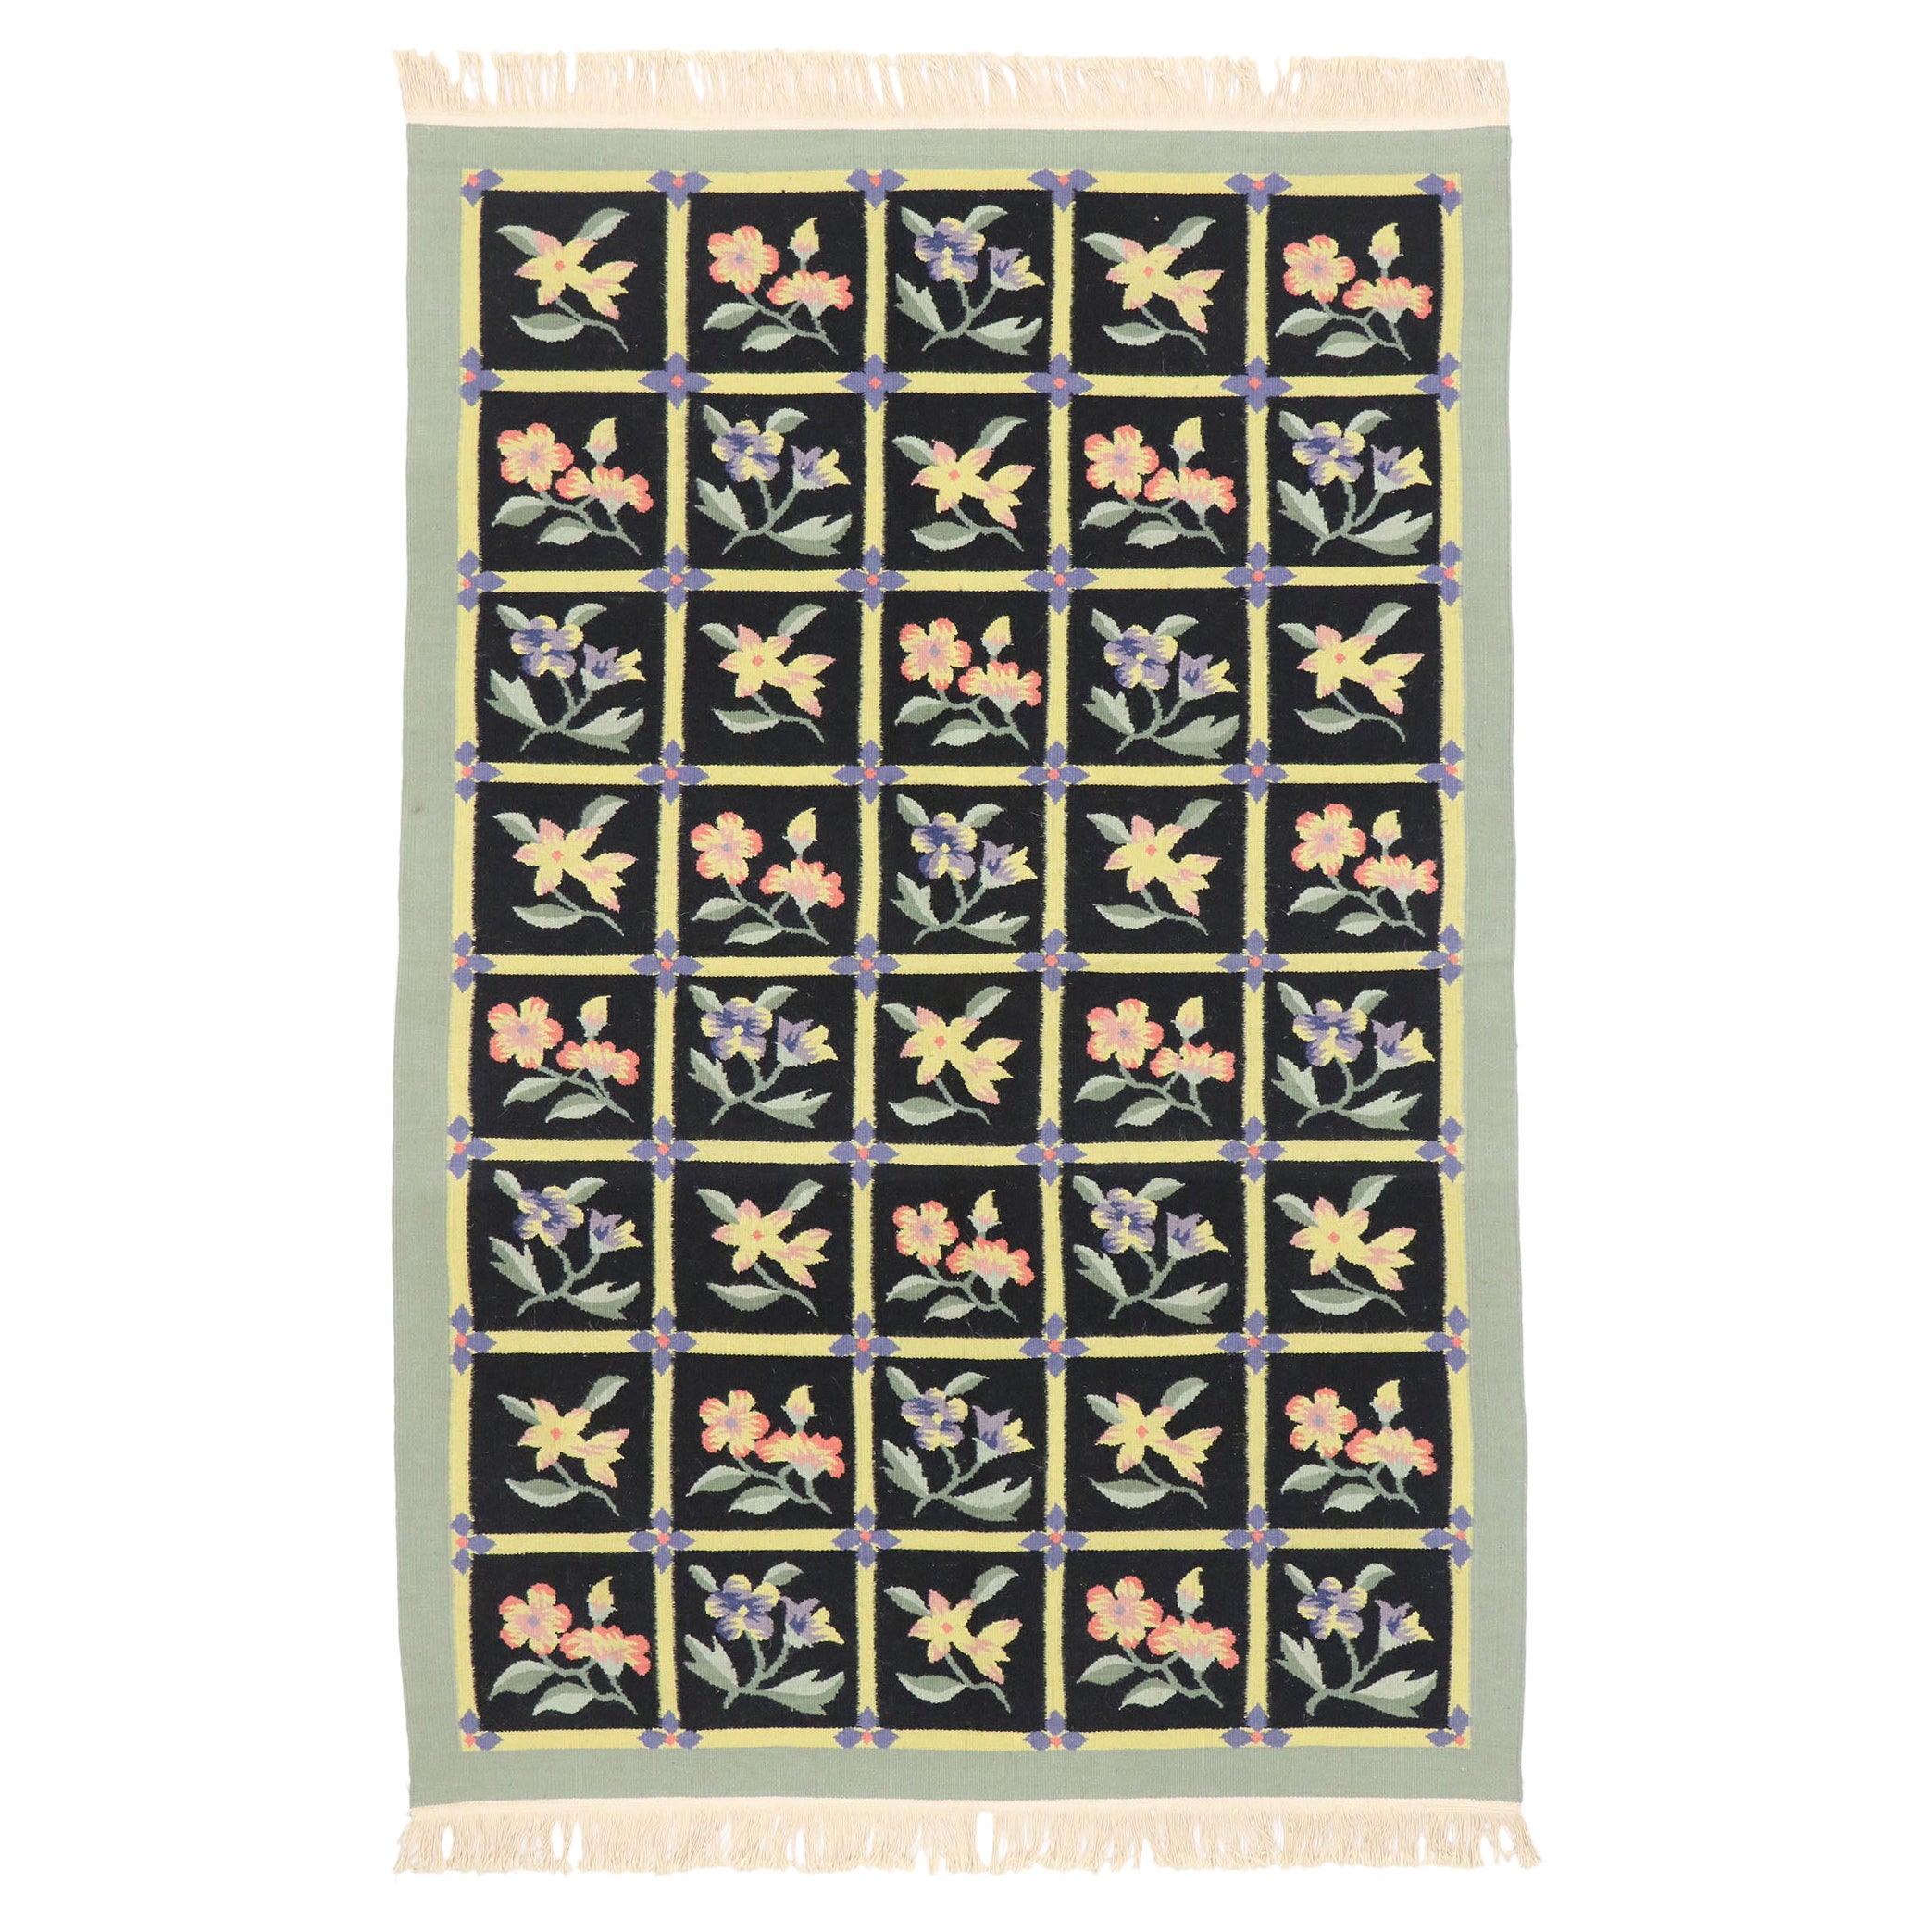 Chinesischer, geblümter Vintage-Kelim-Teppich im englischen Landhausstil mit Blumenmuster